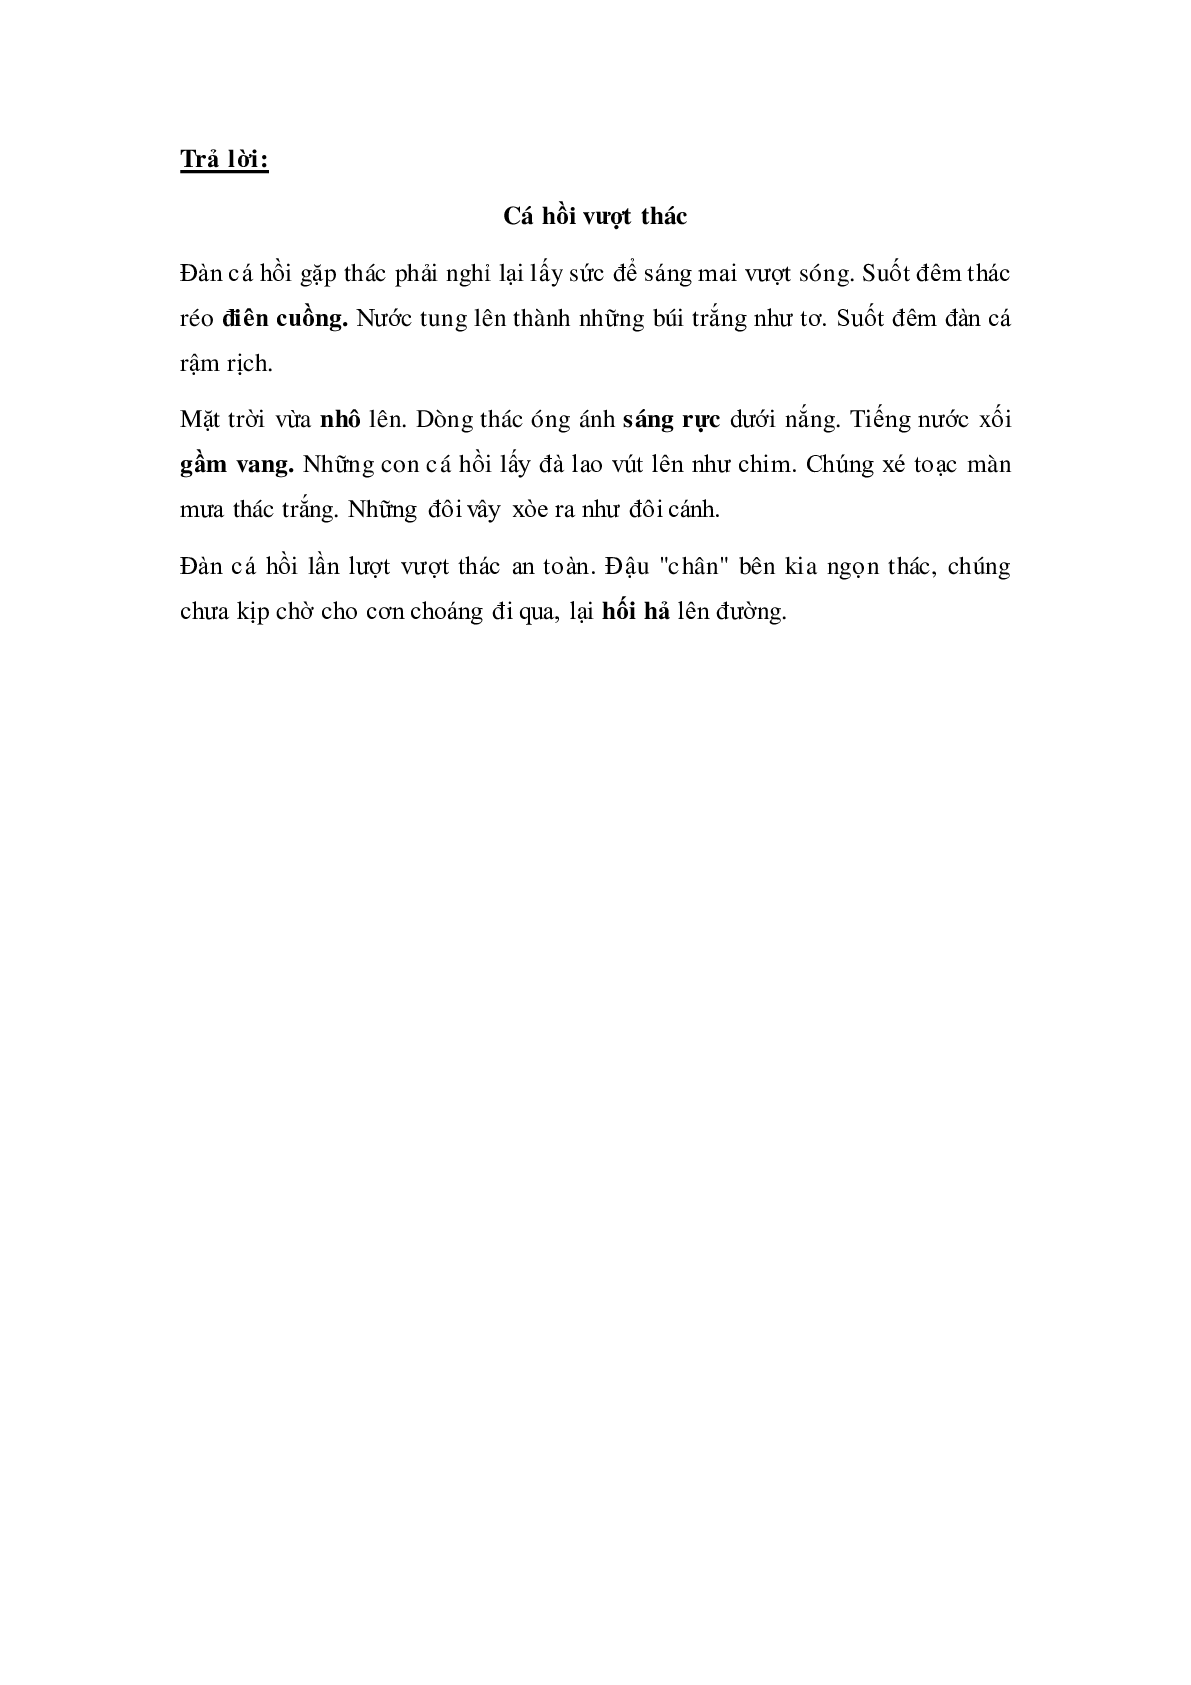 Soạn Tiếng Việt lớp 5: Luyện từ và câu: Luyện tập về từ đồng nghĩa mới nhất (trang 2)